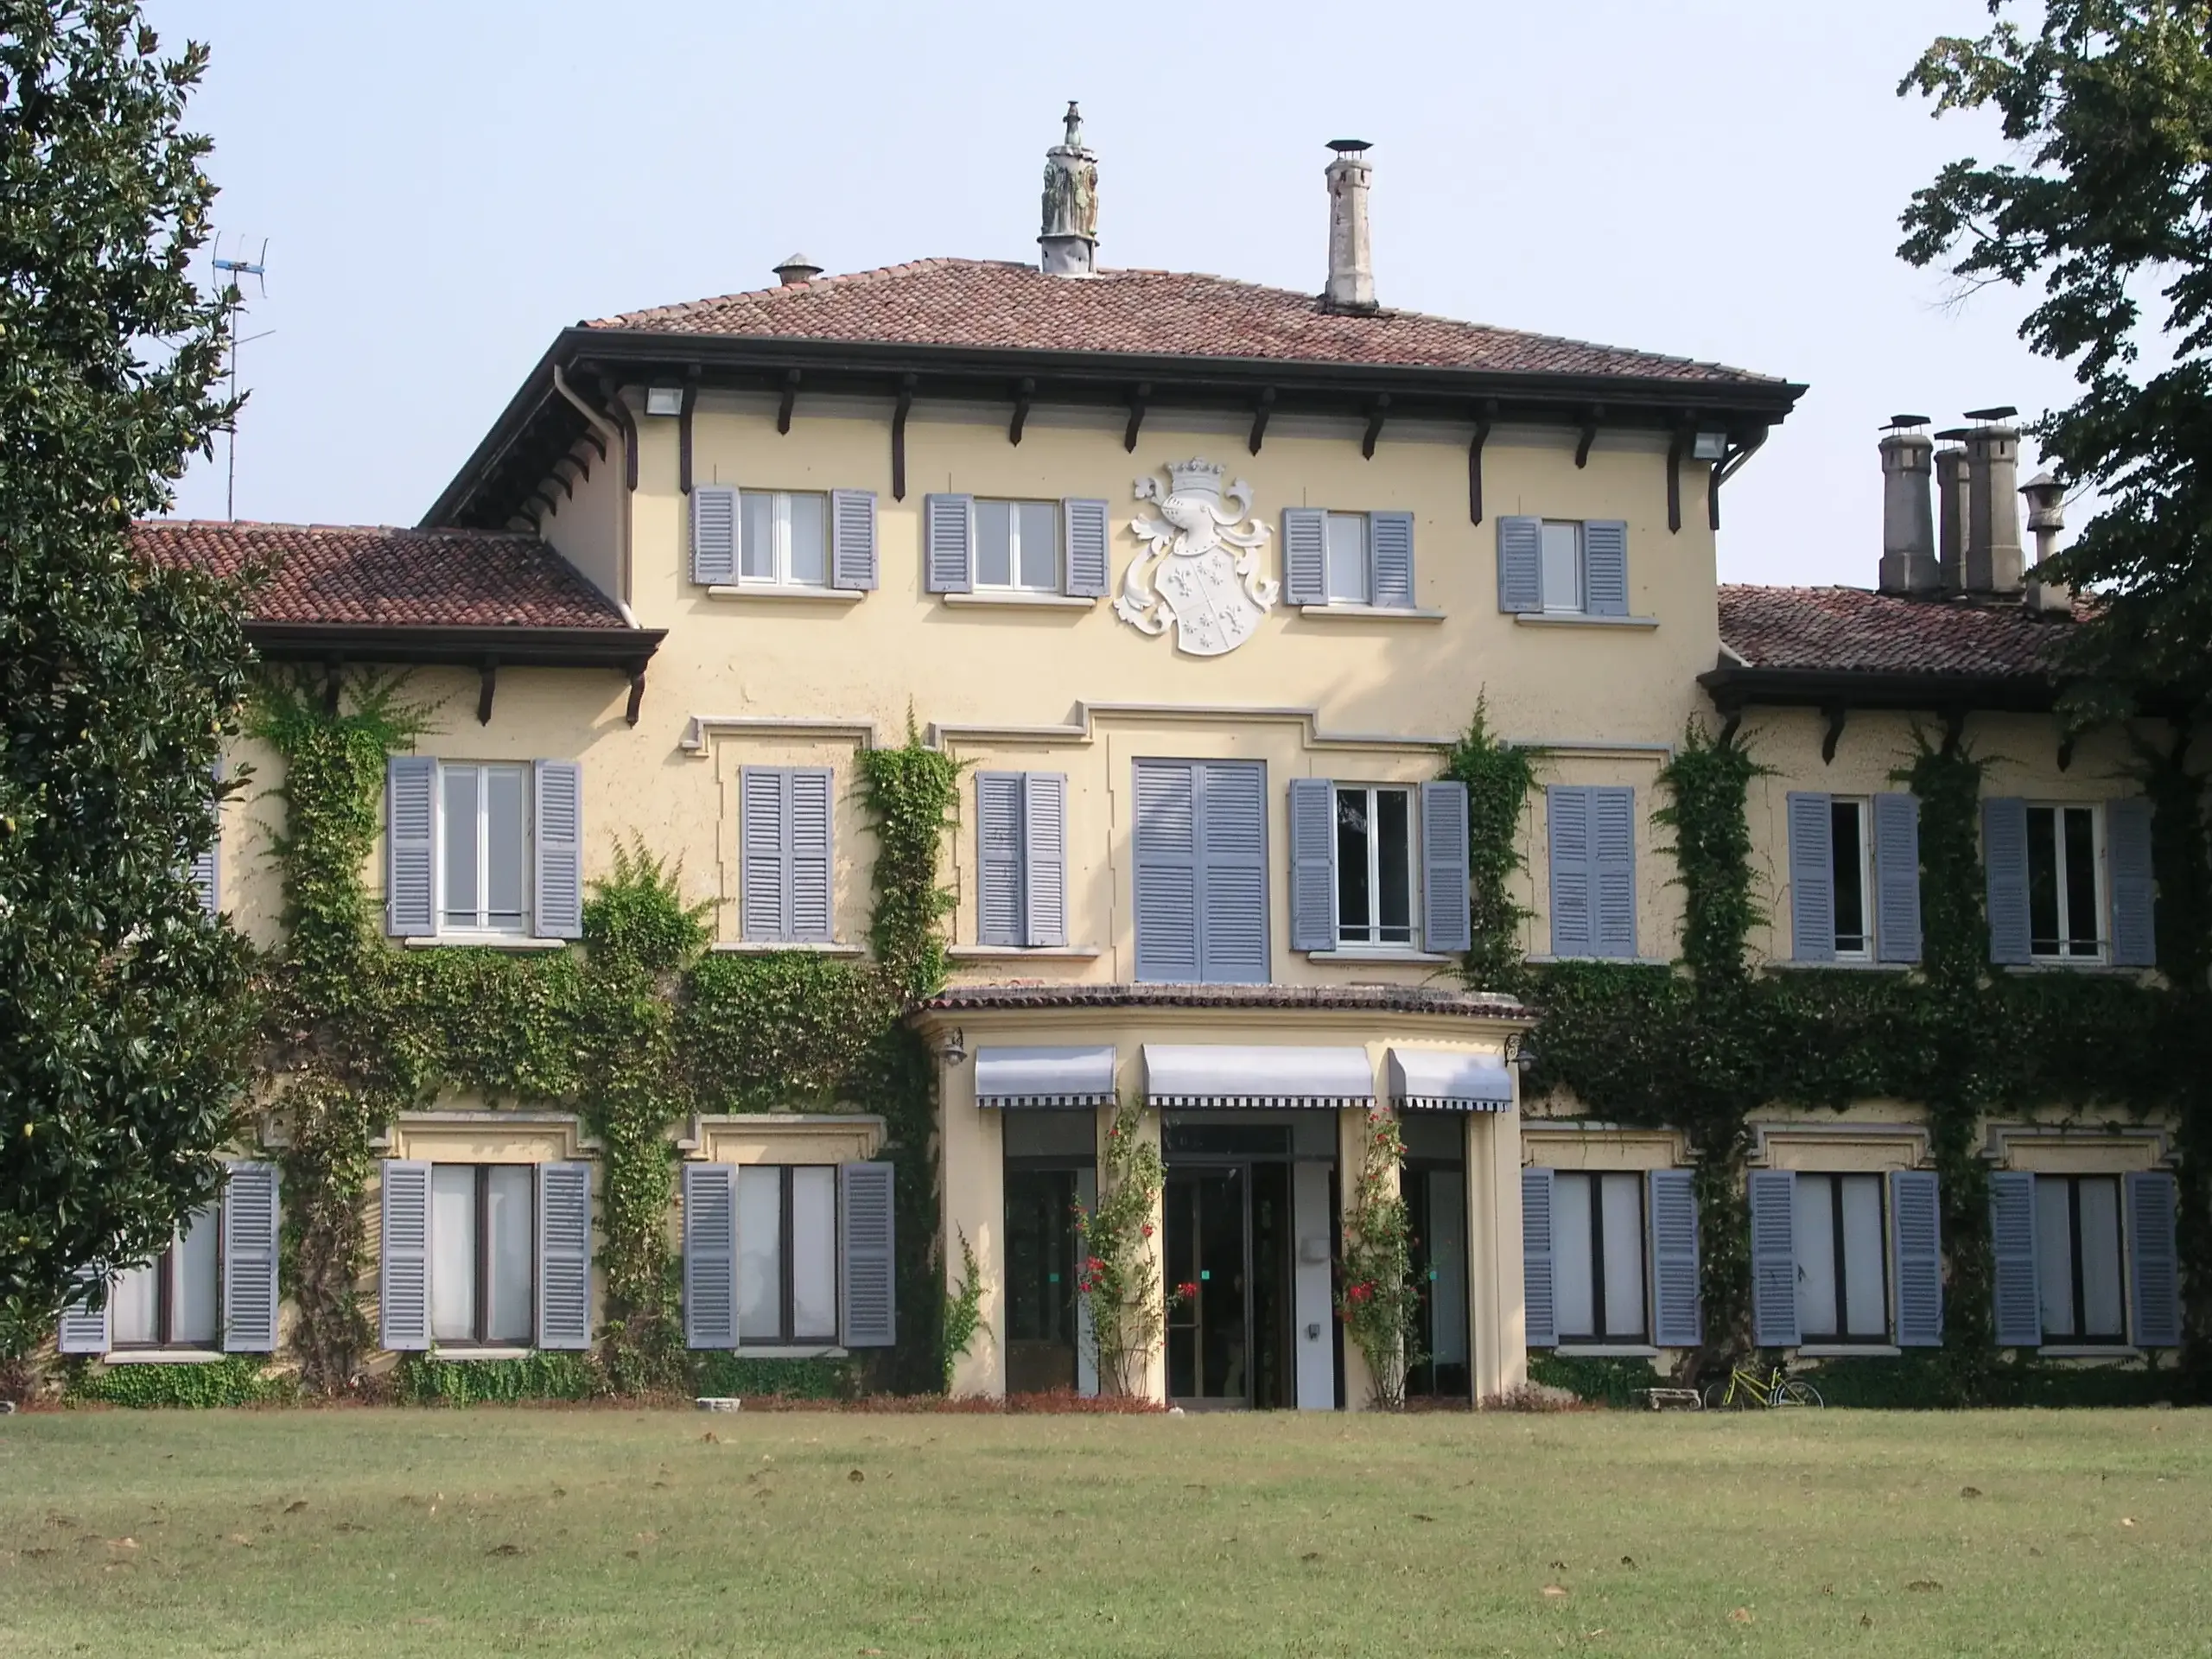 Villa Casana, Novedrate ( Como ) - 'Luminous Gardens'